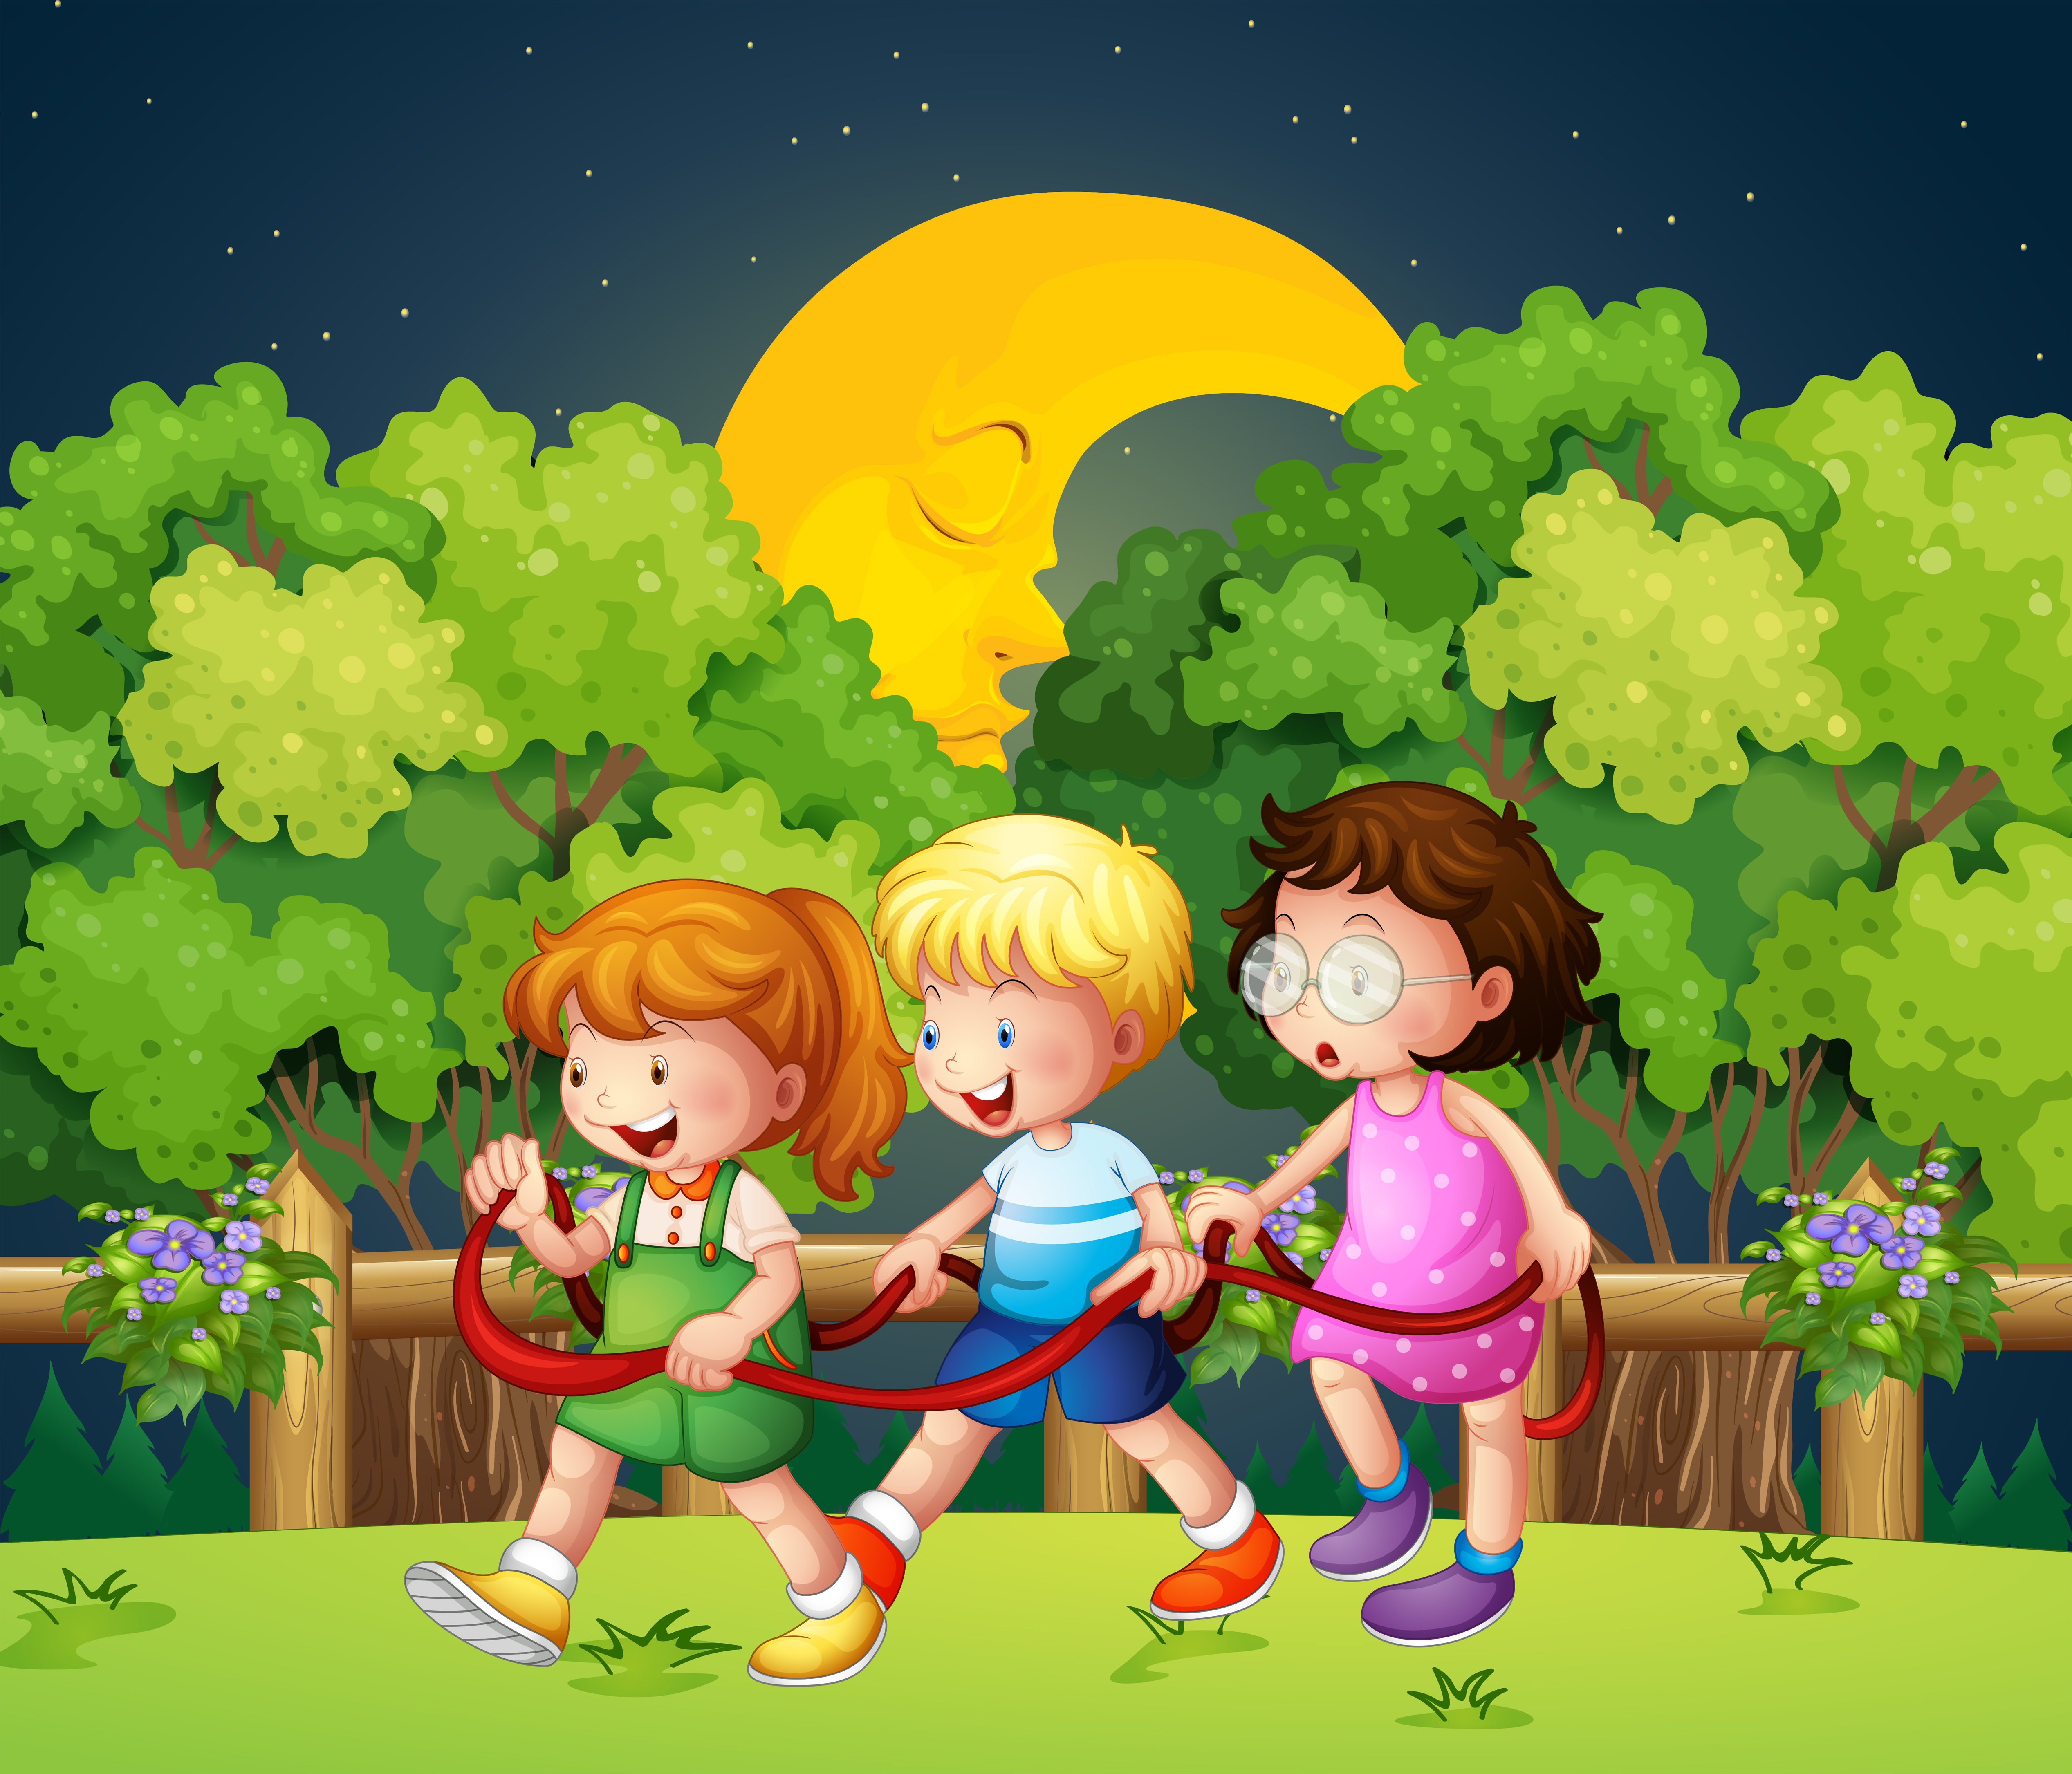 Гулять до поздна. Дети на прогулке в детском саду. Вечер для детей. Изображение дети на прогулке для детей. Вечер для детей в детском саду.